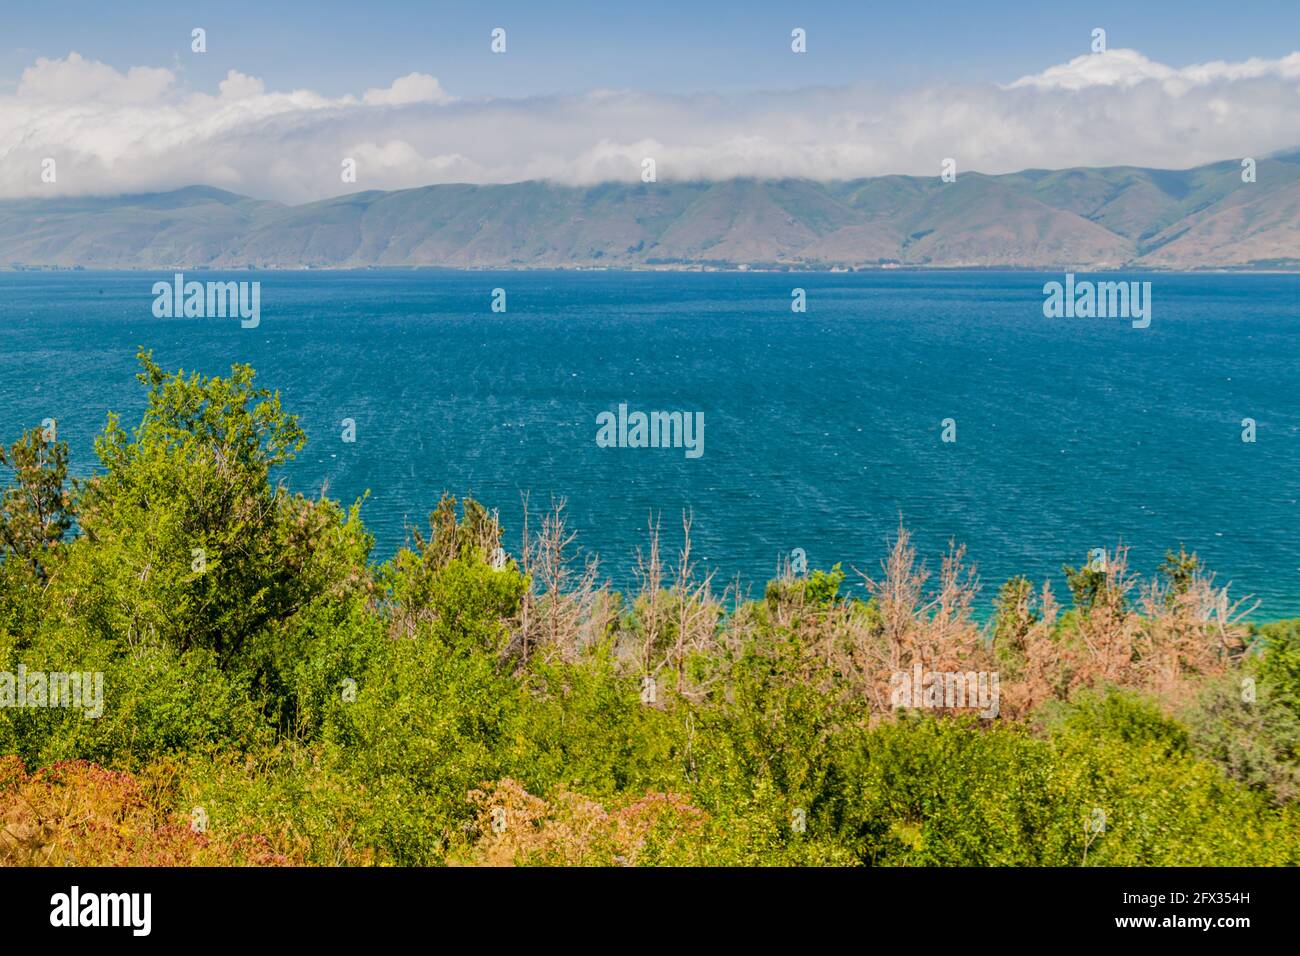 Mountains and lake Sevan in Armenia Stock Photo